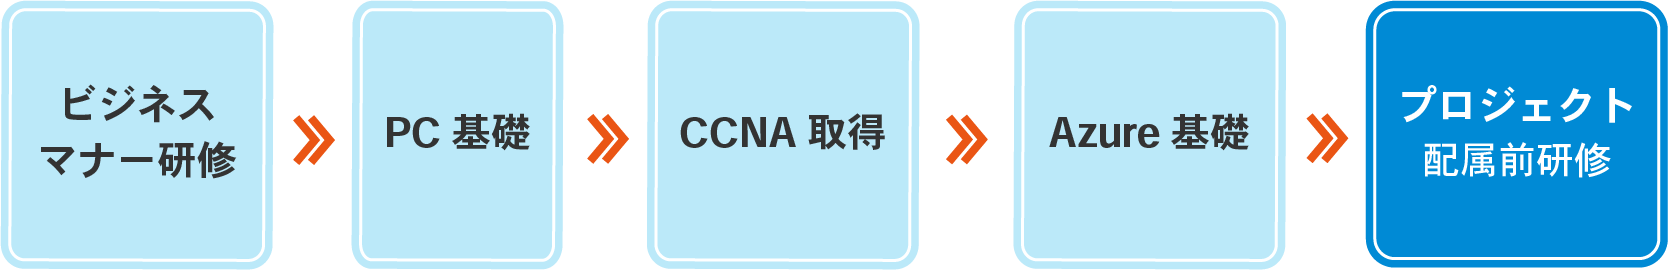 ビジネスマナー研修→PC基礎→CCNA取得→Azure基礎→プロジェクト配属前研修